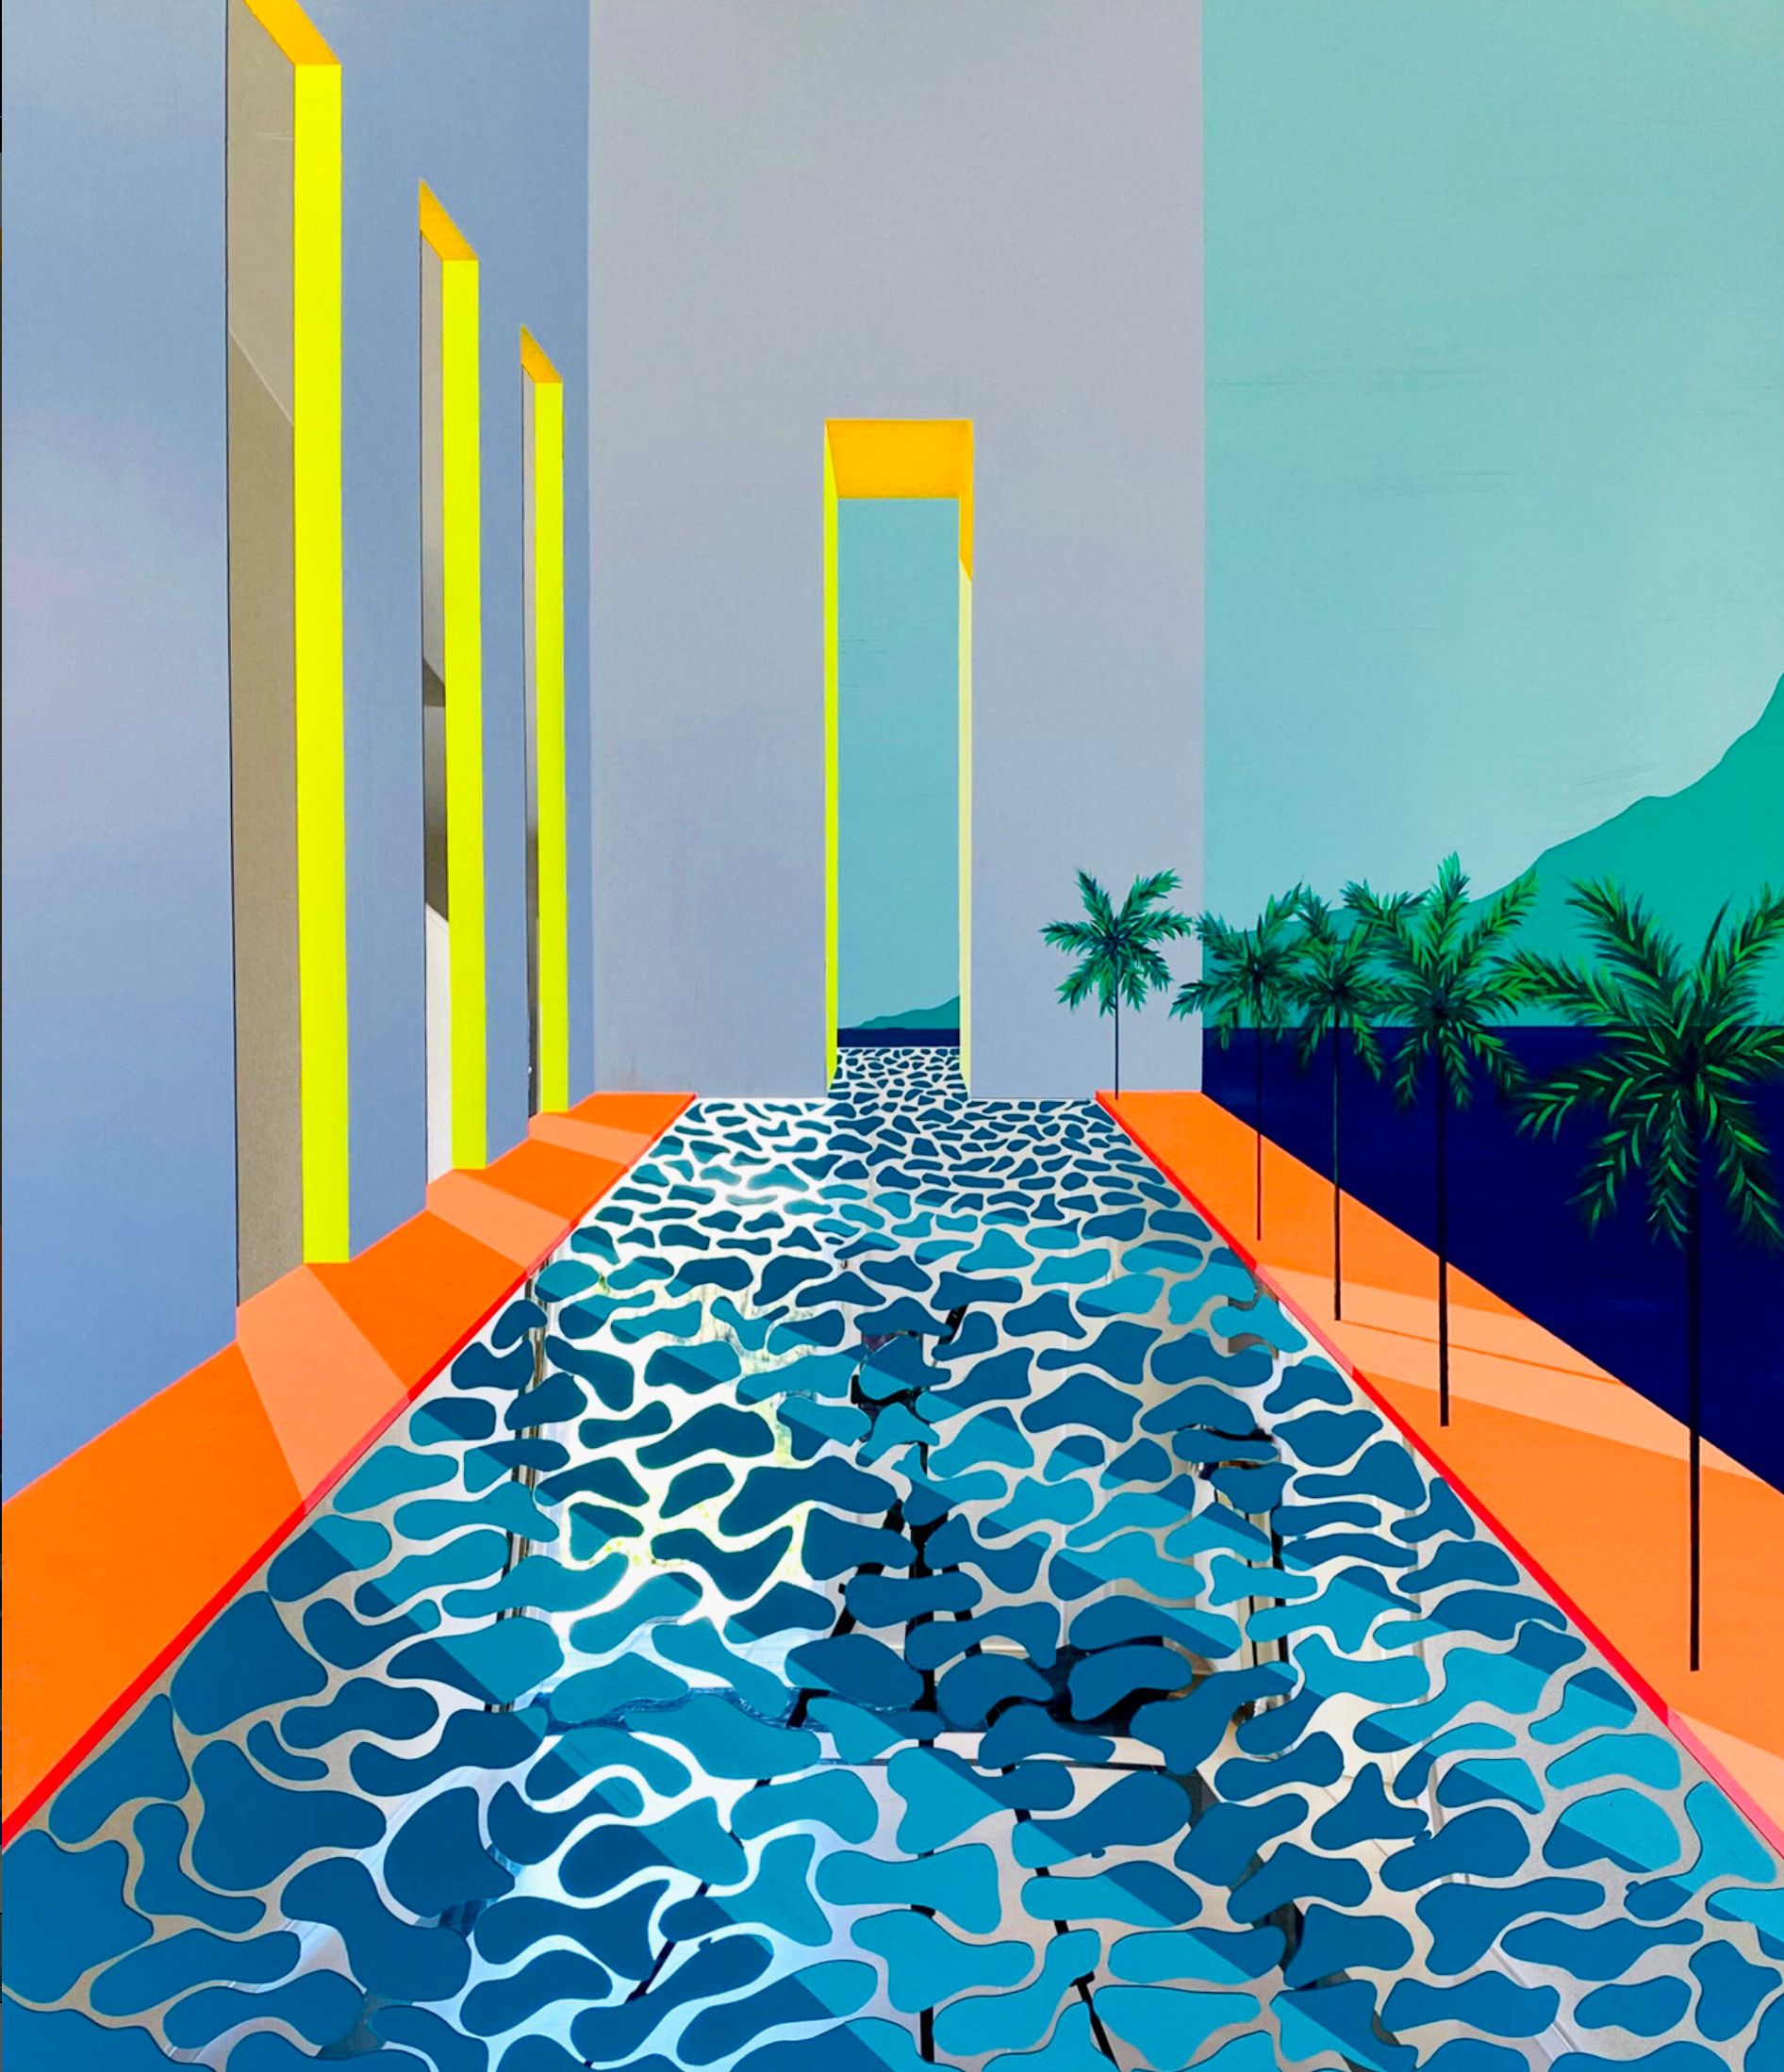 Isabelle Derecque, "Meanwhile, We're drinking Martinis in paradise" Peinture colorée, réalisée dans une piscine aux couleurs mystérieuses, sur un miroir en plexiglas de style pop-up aux couleurs gaies et énergiques. Visualisé par la géométrie, les perspectives, les contrastes et les reflets.